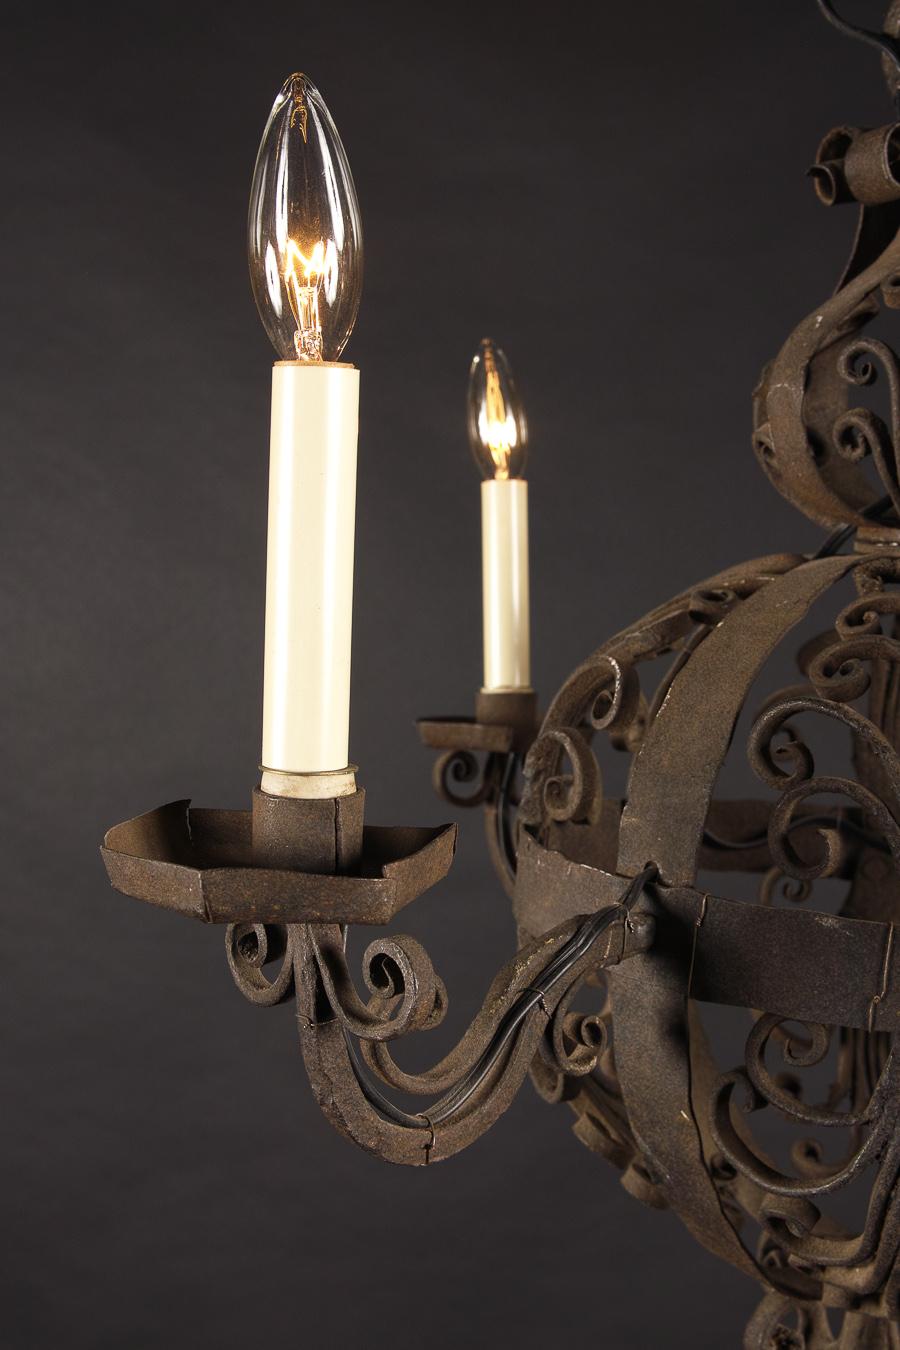 Ce lustre sphérique du XVIIIe siècle est fabriqué en fer forgé à la main vers 1780. Cette pièce ancienne française est ornée d'une bobèche en fer et de décorations en volutes fleuries au sommet, avec un épi de faîtage fleuri. D'un design médiéval